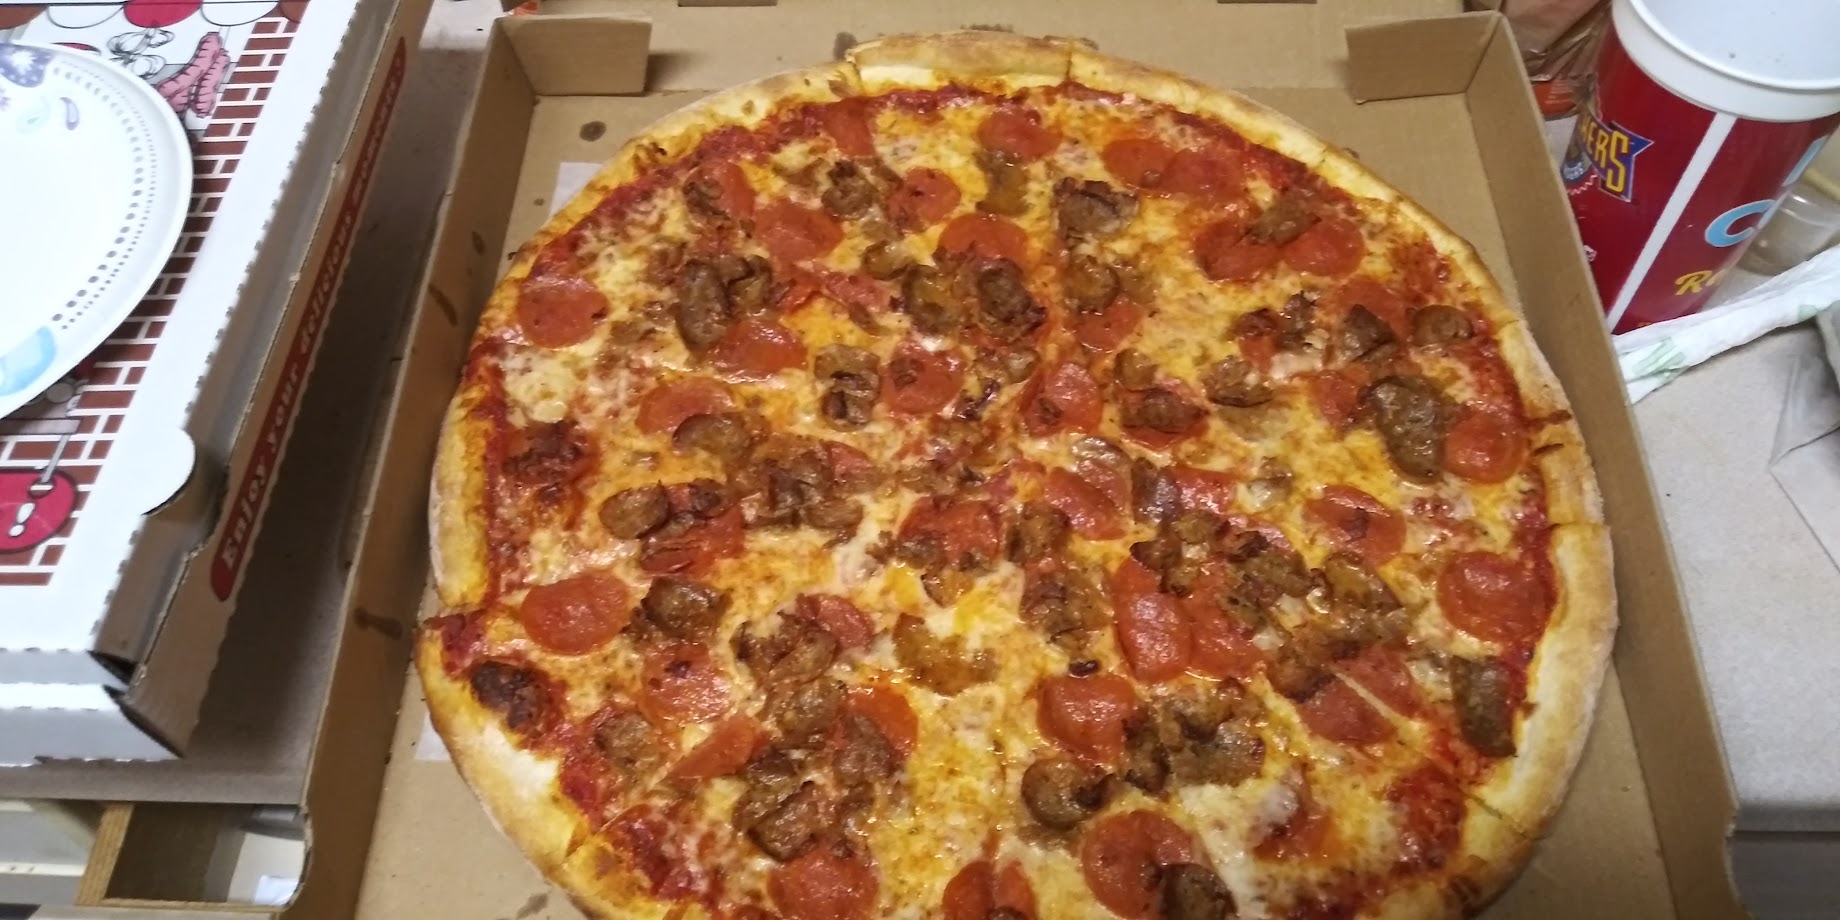 Don's NY Pizza